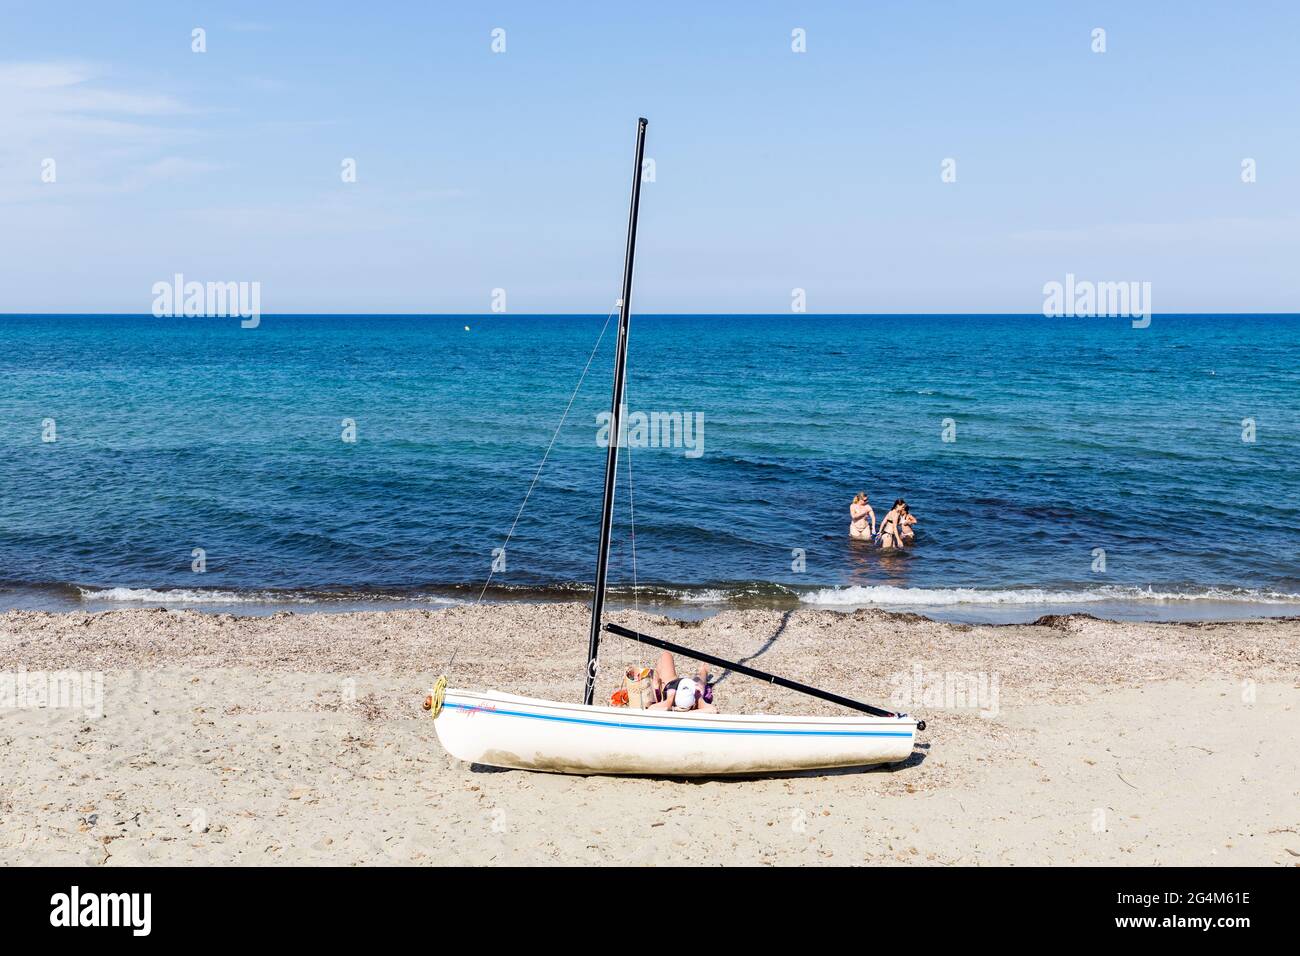 Segelboot am Strand gestrandet; eine Person bräunend; drei Personen baden. Prunete Beach, Korsika, Frankreich Stockfoto